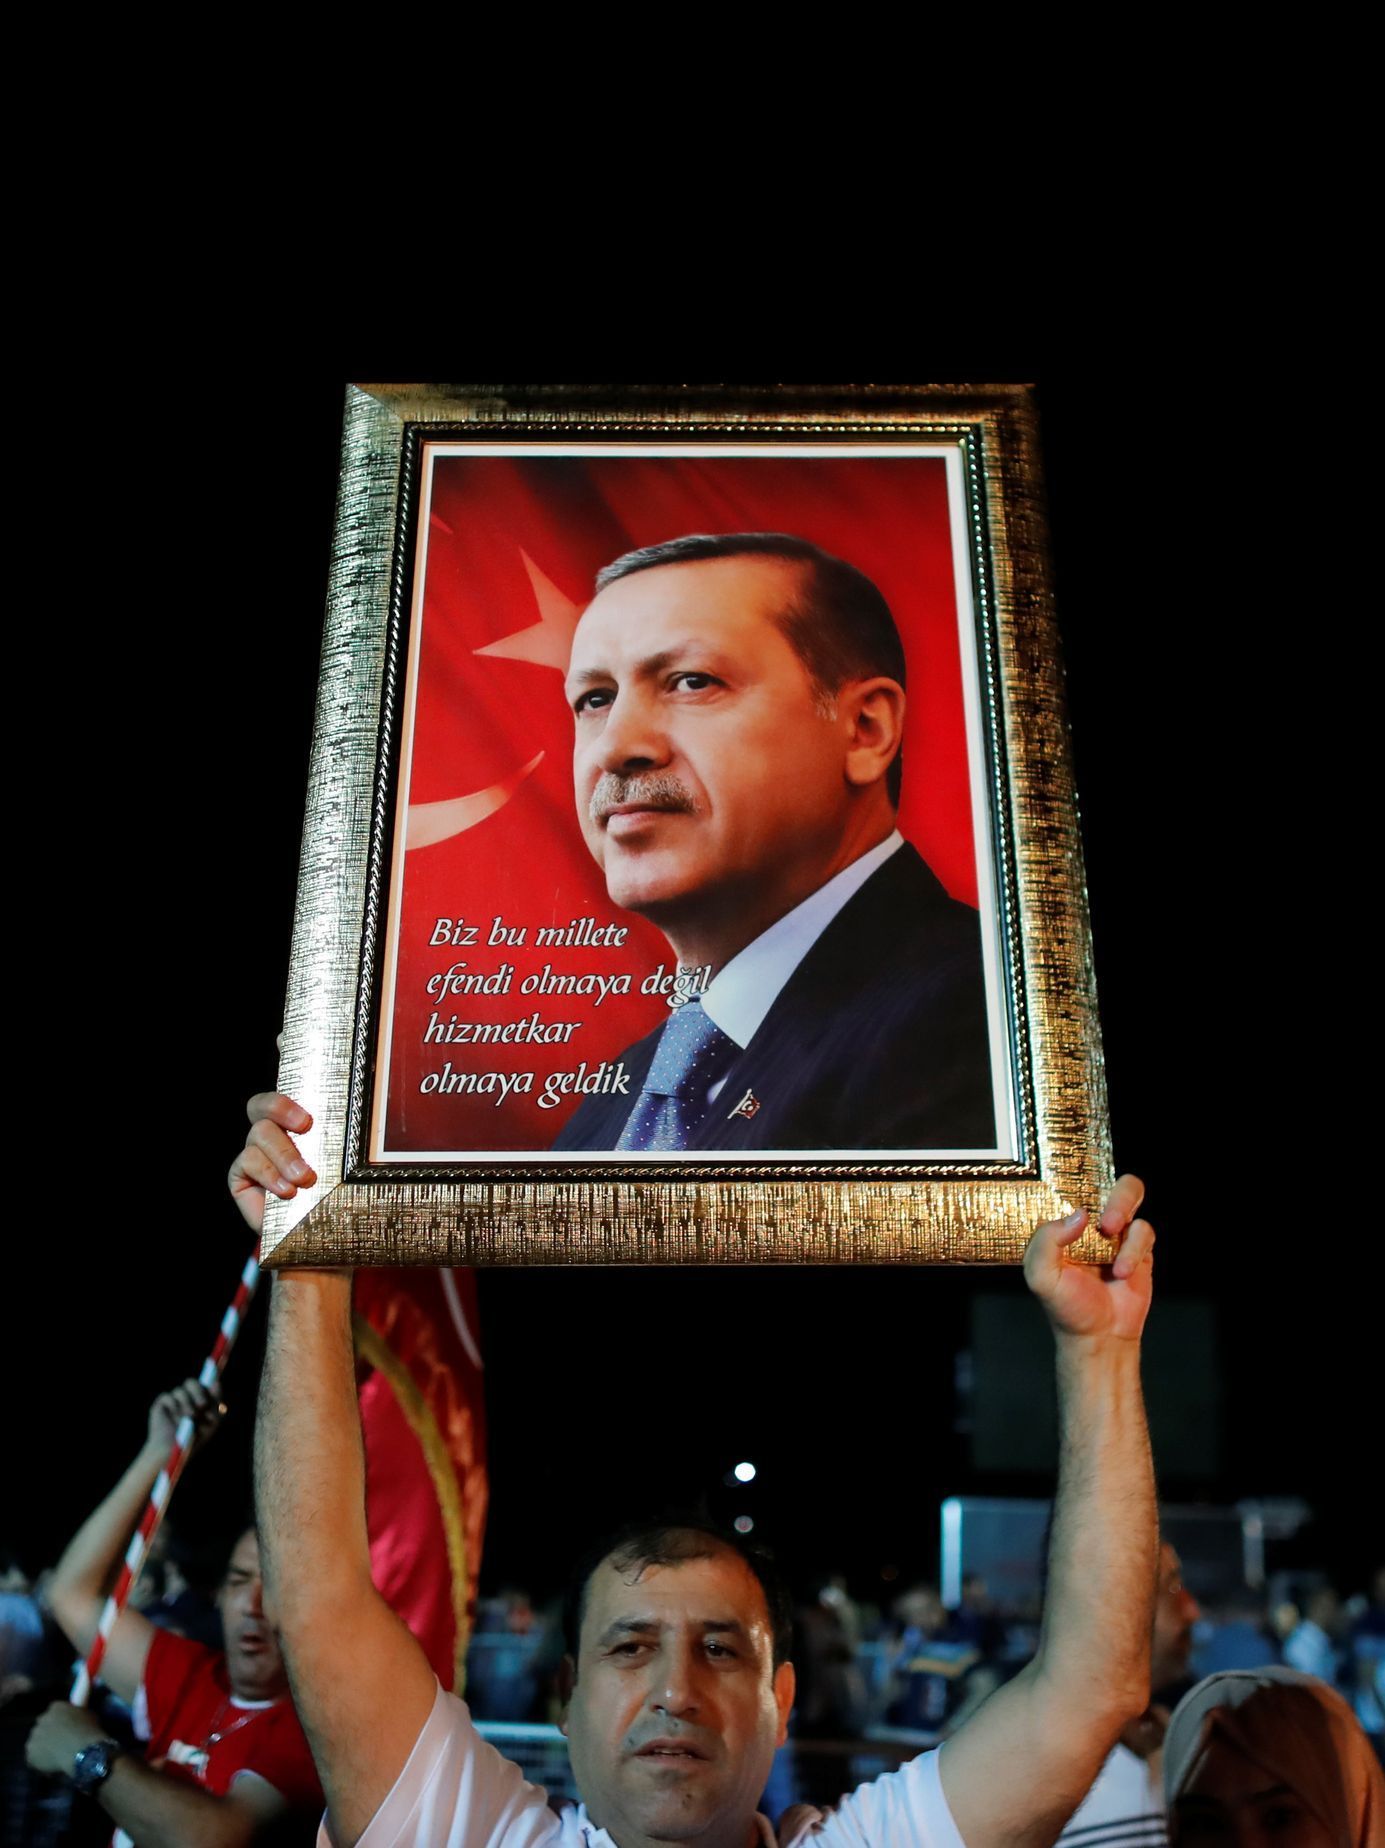 Turecký prezident Erdogan na obrazu